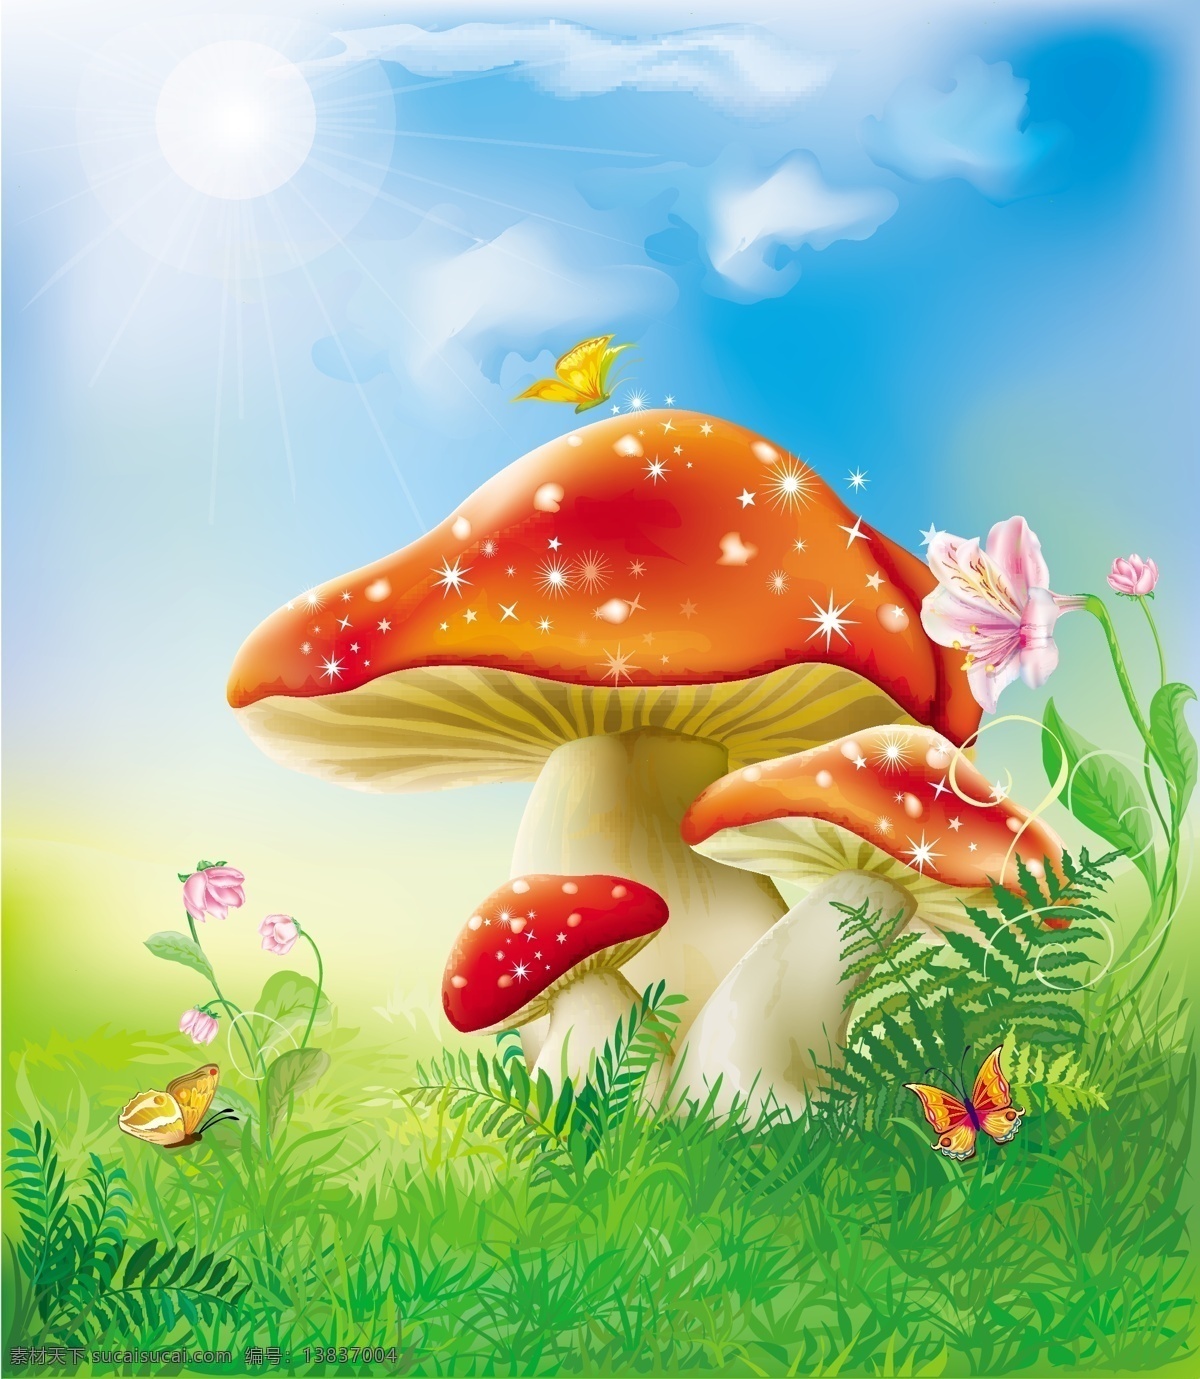 卡通蘑菇矢量 卡通 绘画 蘑菇 蘑菇设计 矢量蘑菇 蘑菇素材 食物蔬菜 蔬菜 水果 生物世界 矢量素材